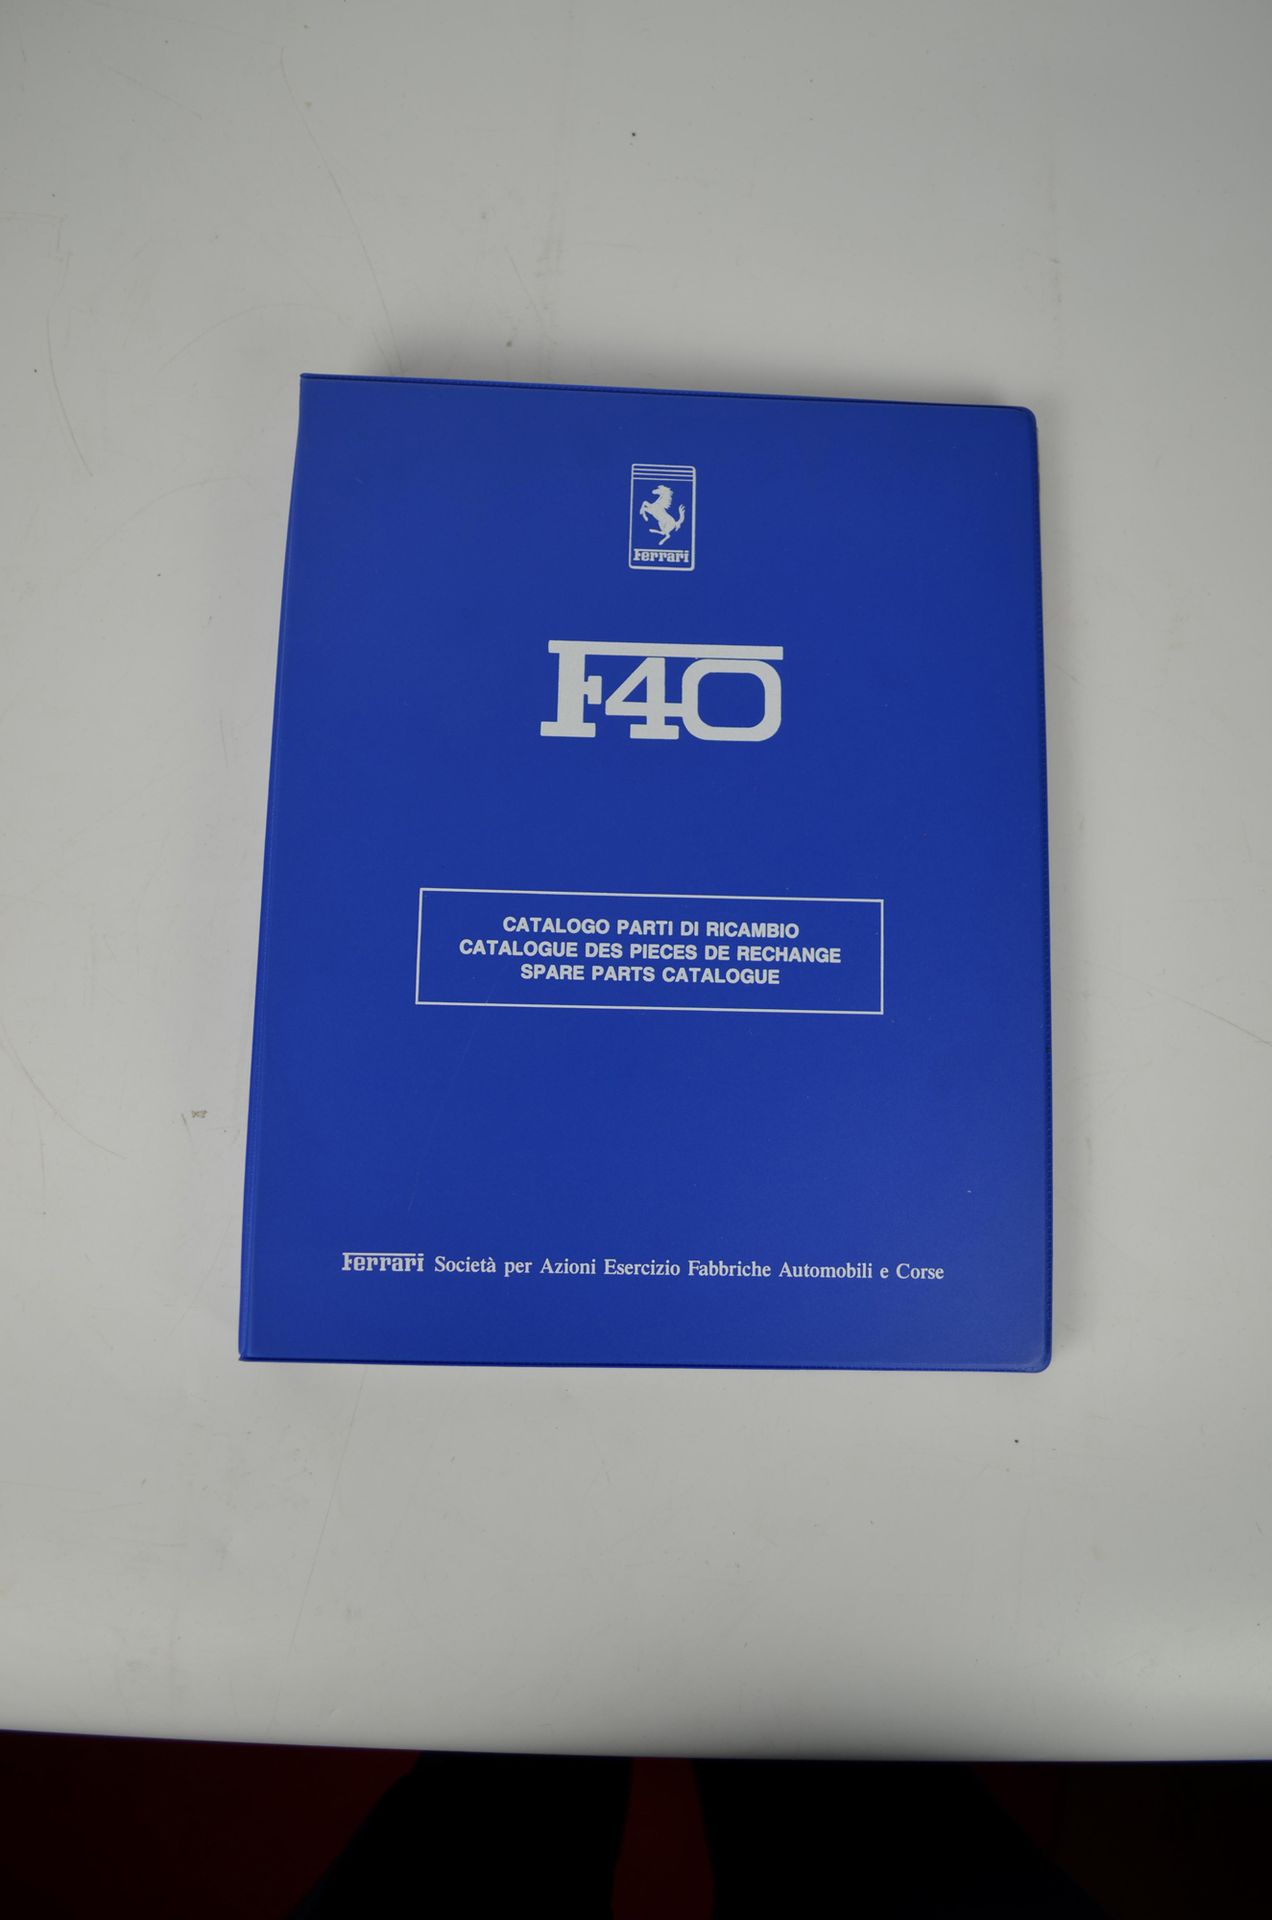 Catalogue de pièces de rechange F40 Catalogue de pièces de rechange F40